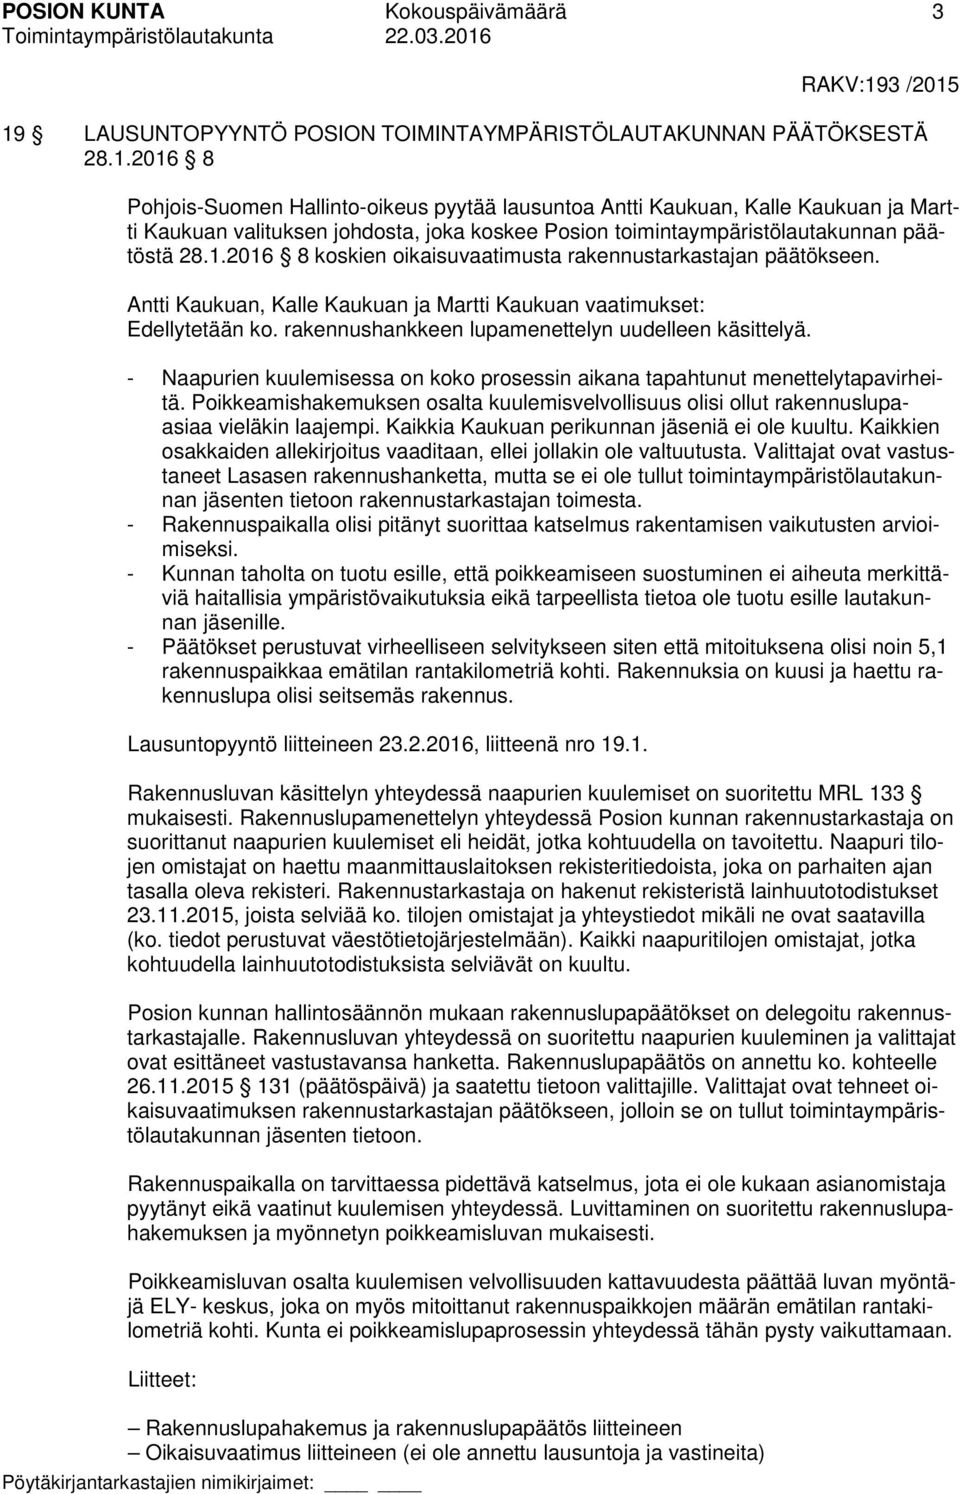 1.2016 8 koskien oikaisuvaatimusta rakennustarkastajan päätökseen. Antti Kaukuan, Kalle Kaukuan ja Martti Kaukuan vaatimukset: Edellytetään ko. rakennushankkeen lupamenettelyn uudelleen käsittelyä.